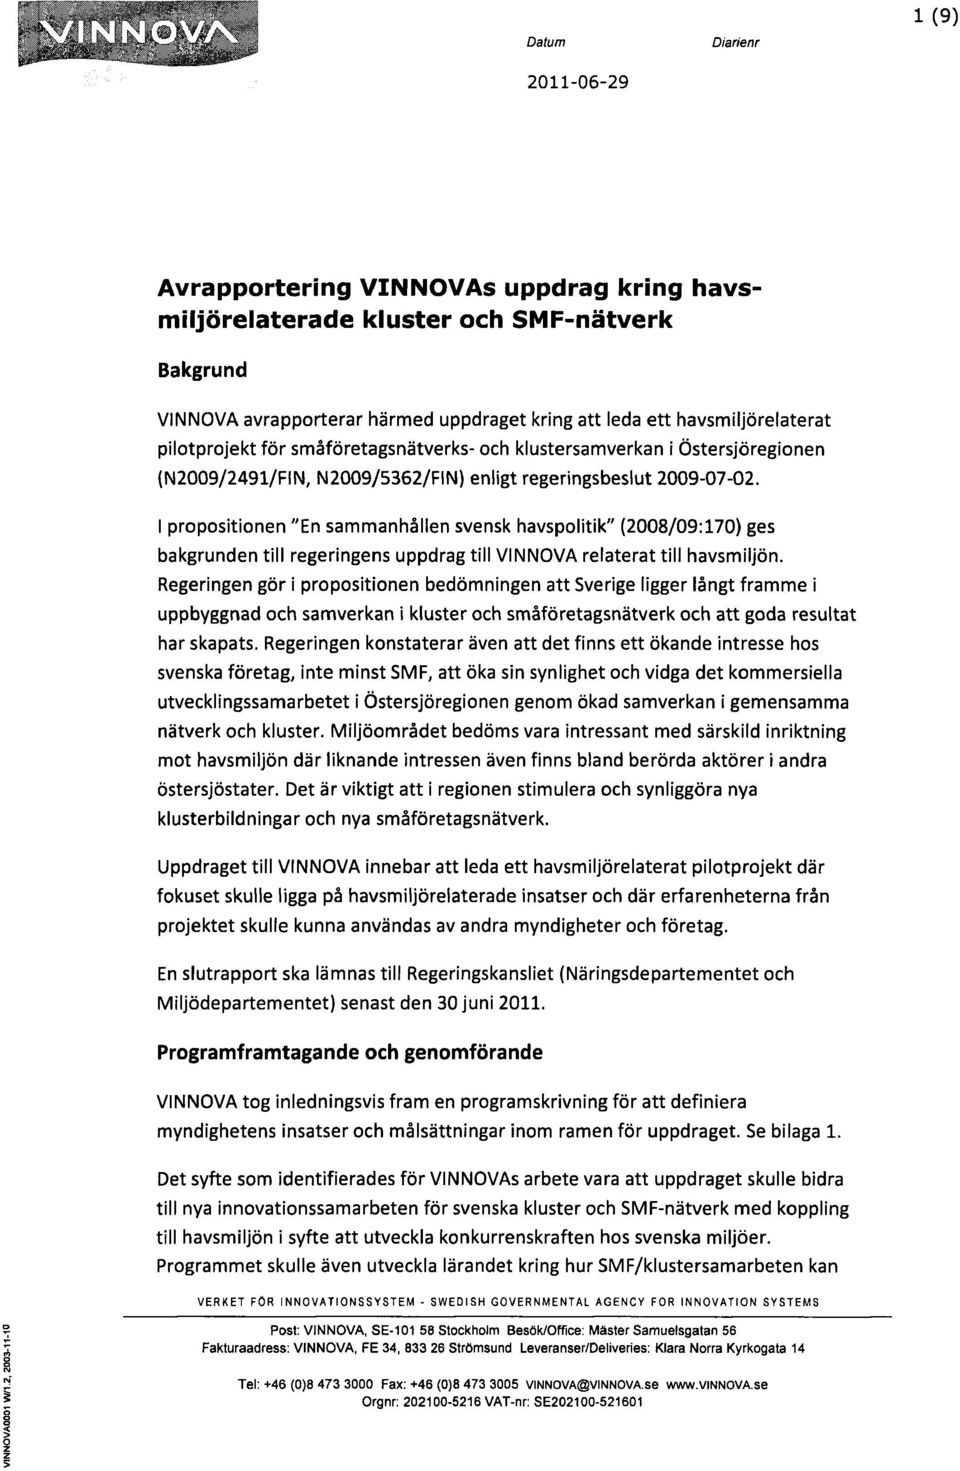 I propositionen "En sammanhållen svensk havspolitik" (2008/09:170) ges bakgrunden till regeringens uppdrag till VINNOVA relaterat till havsmiljön.